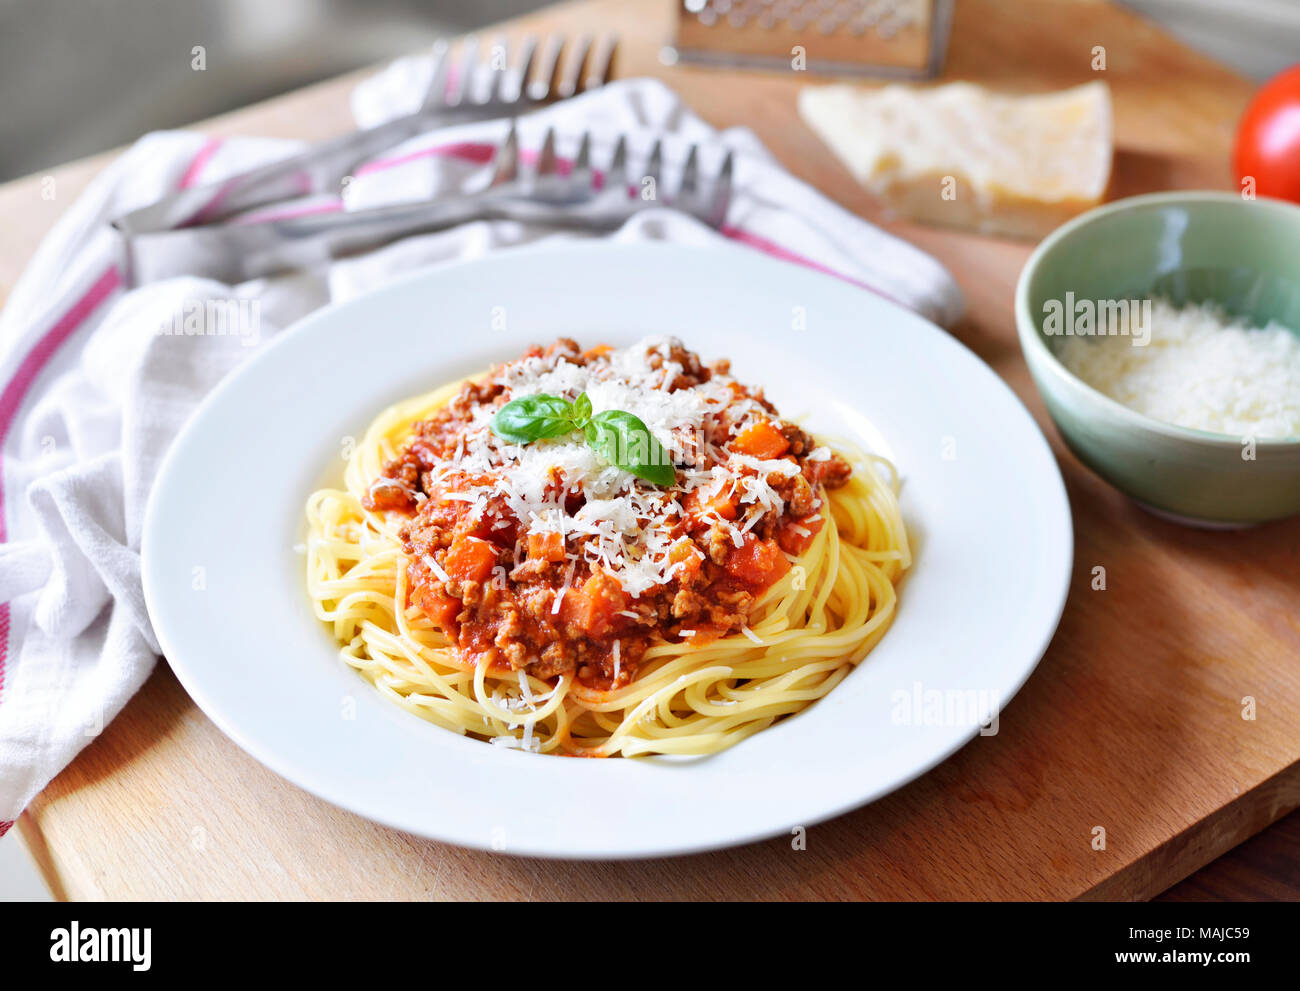 Leckere Pasta essen, Spaghetti Bolognese auf einem weißen Teller. Nudelgericht, traditionelle italienische Küche mit Parmesan Käse, Hackfleisch und Basil leaf. Stockfoto